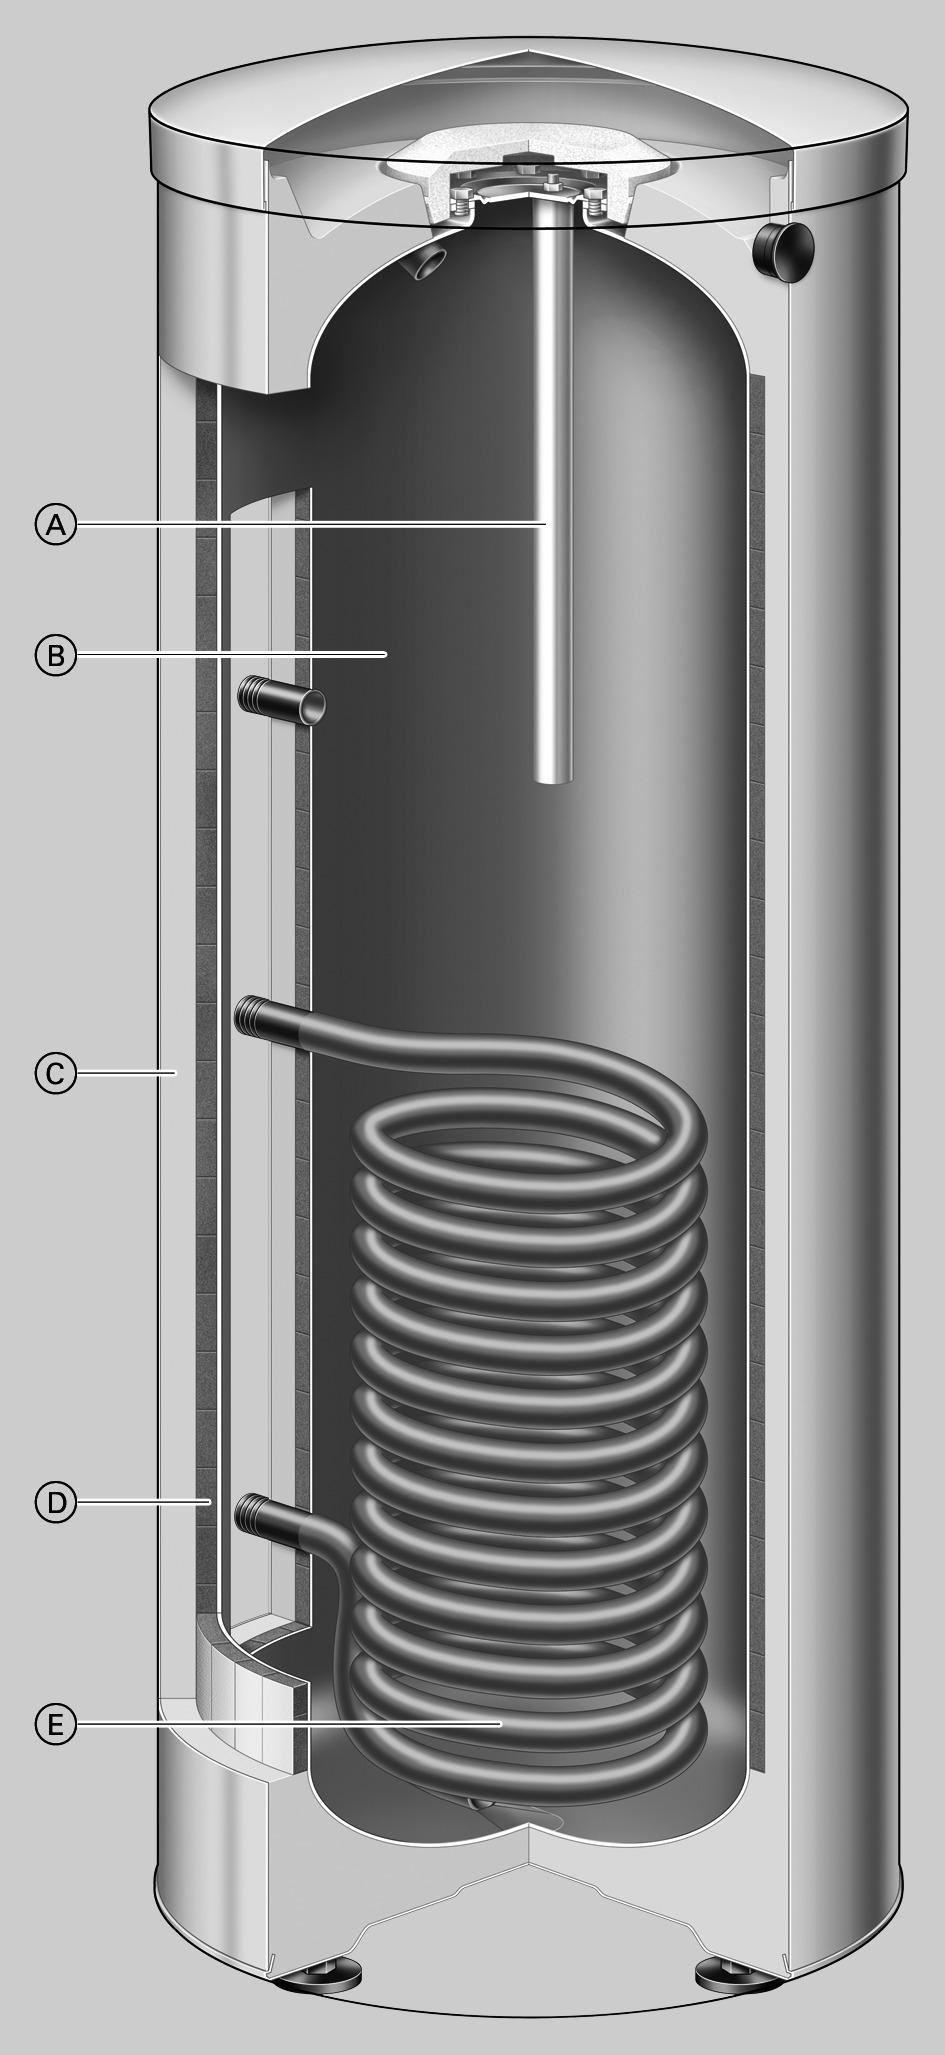 Vantagens (continuação) Vitocell 100 V, modelo CVAA-A A Ânodo de magnésio ou de corrente induzida B Depósito acumulador em aço com dupla camada de esmalte Ceraprotect C Isolamento térmico gloal